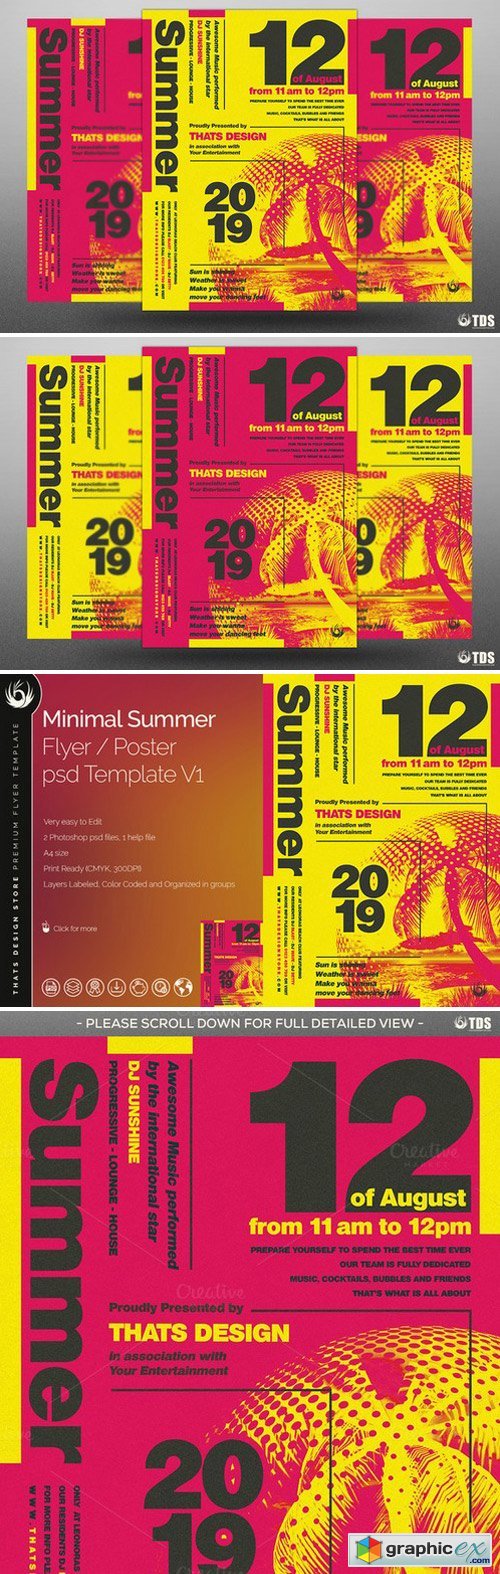 Minimal Summer Flyer Template V1